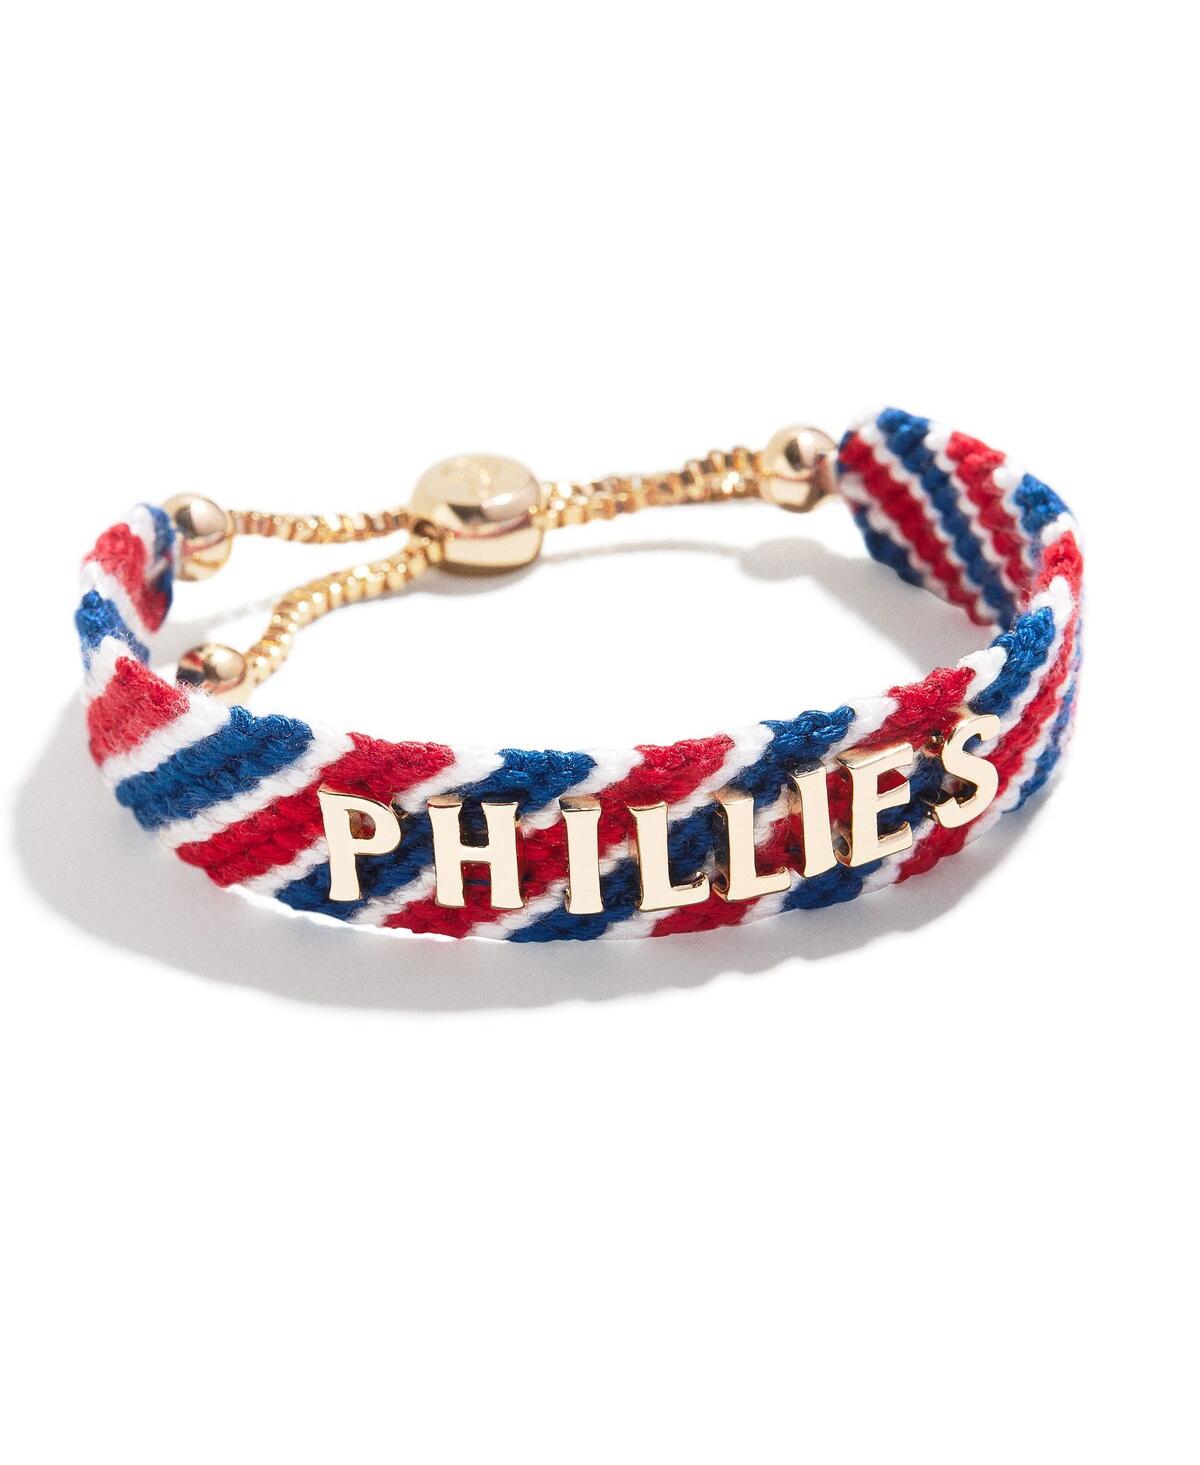 Women's Baublebar Philadelphia Phillies Woven Friendship Bracelet - Red